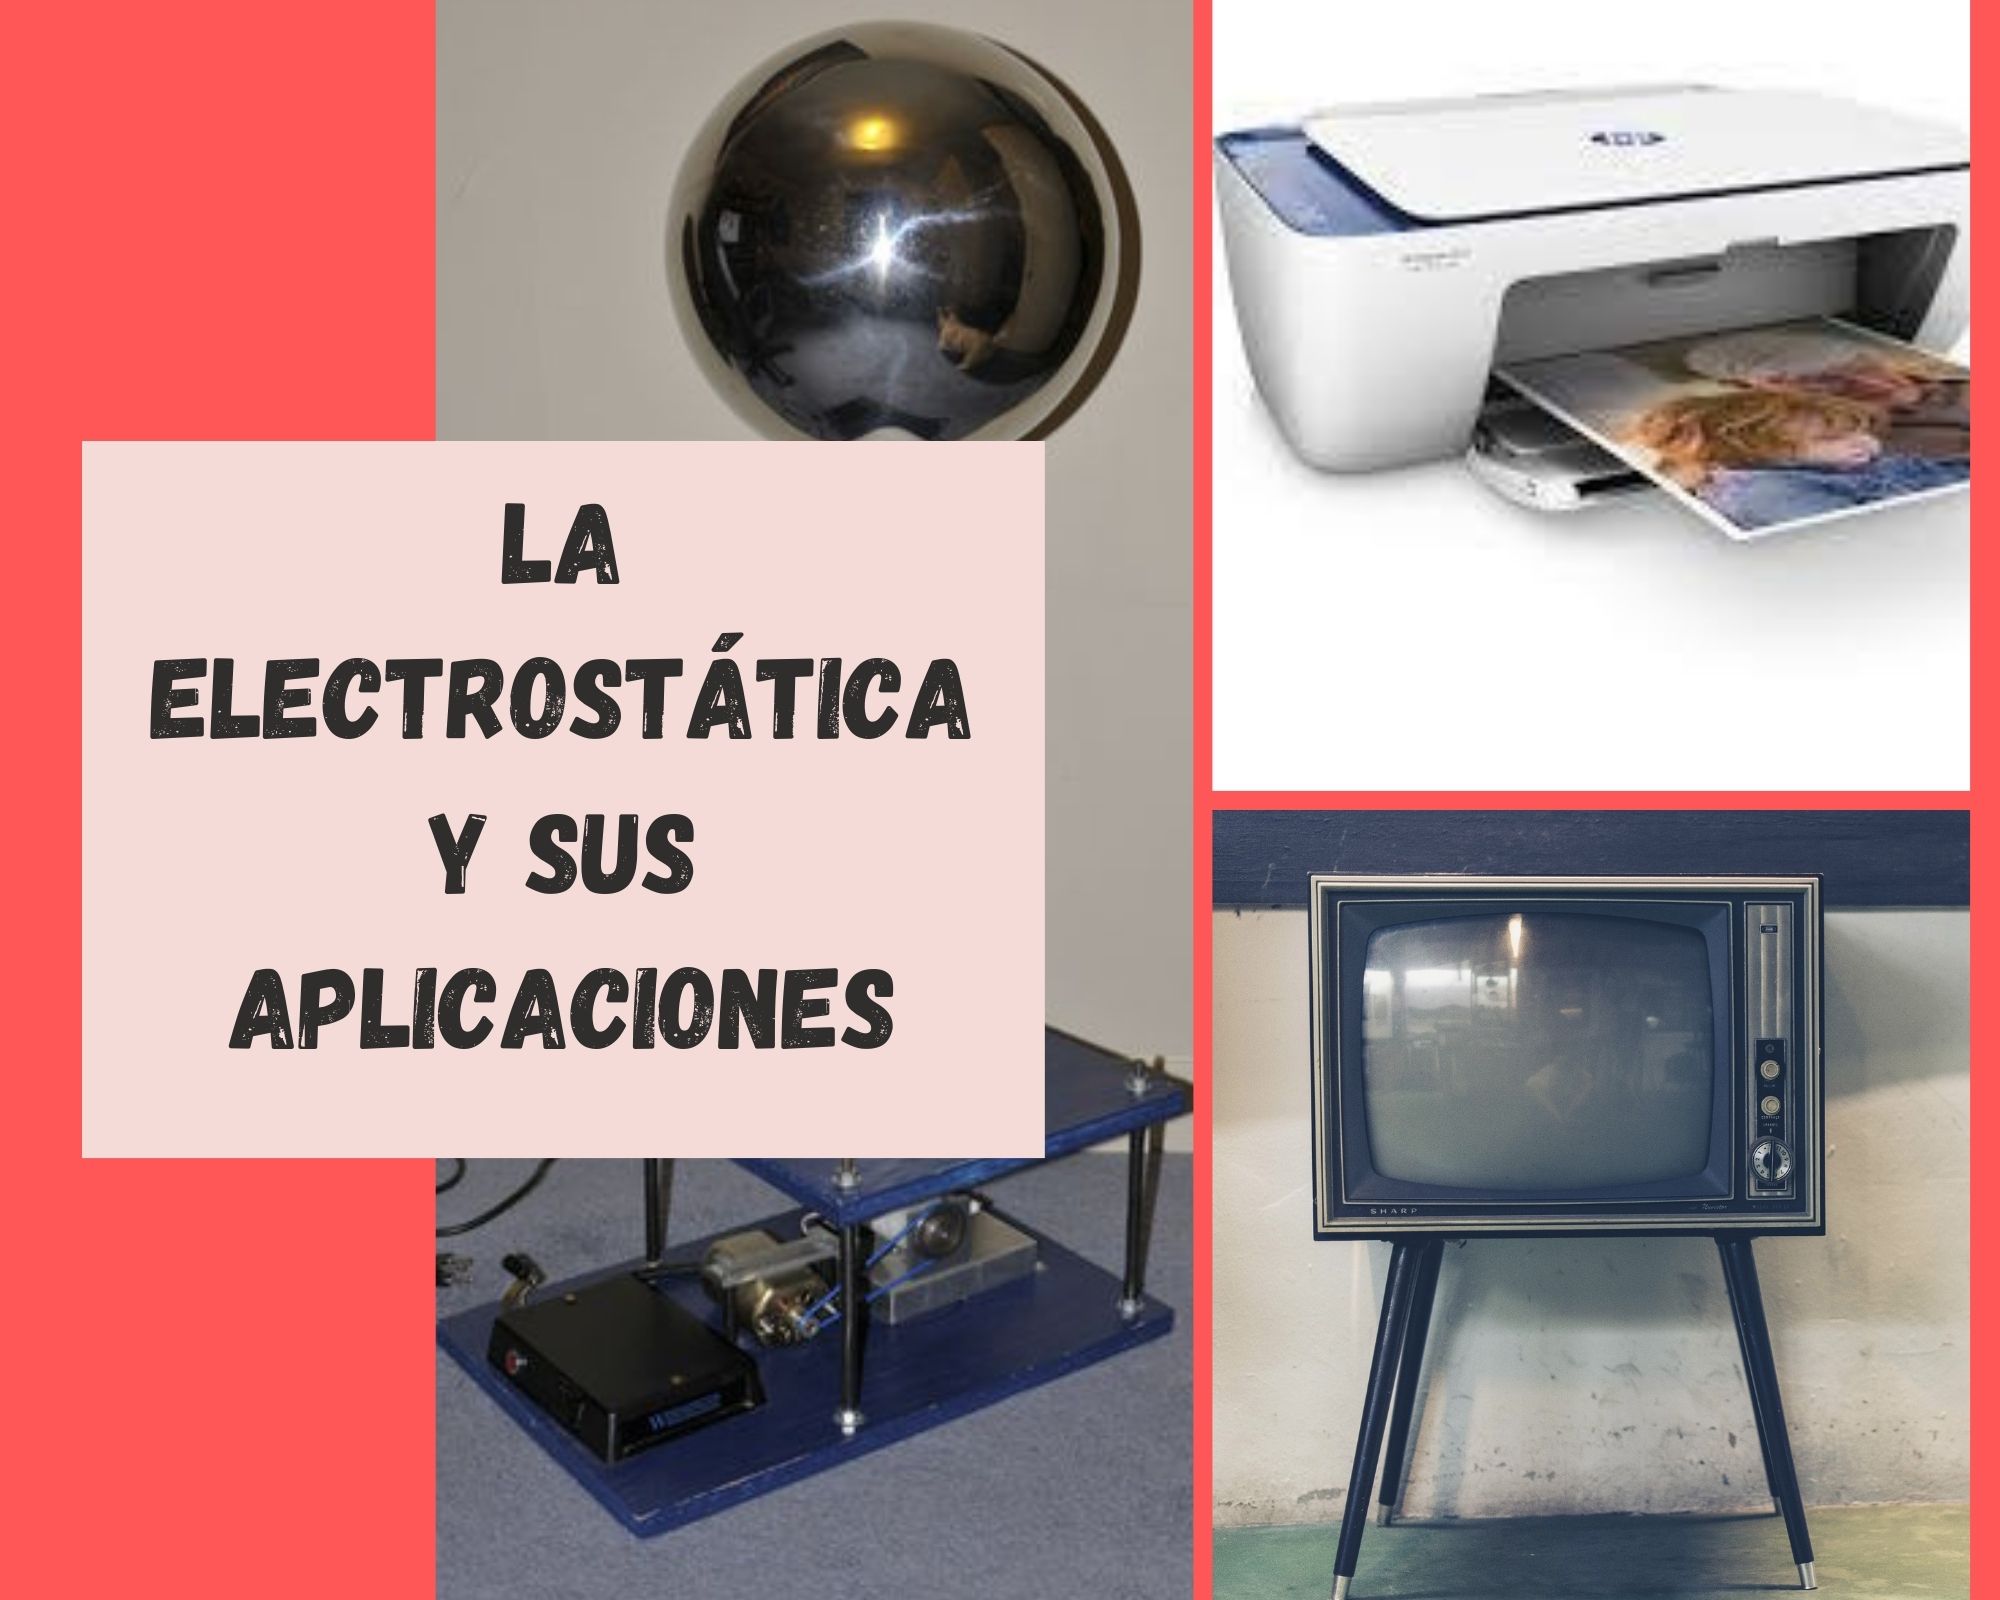 La Electrostática y sus aplicaciones.jpg